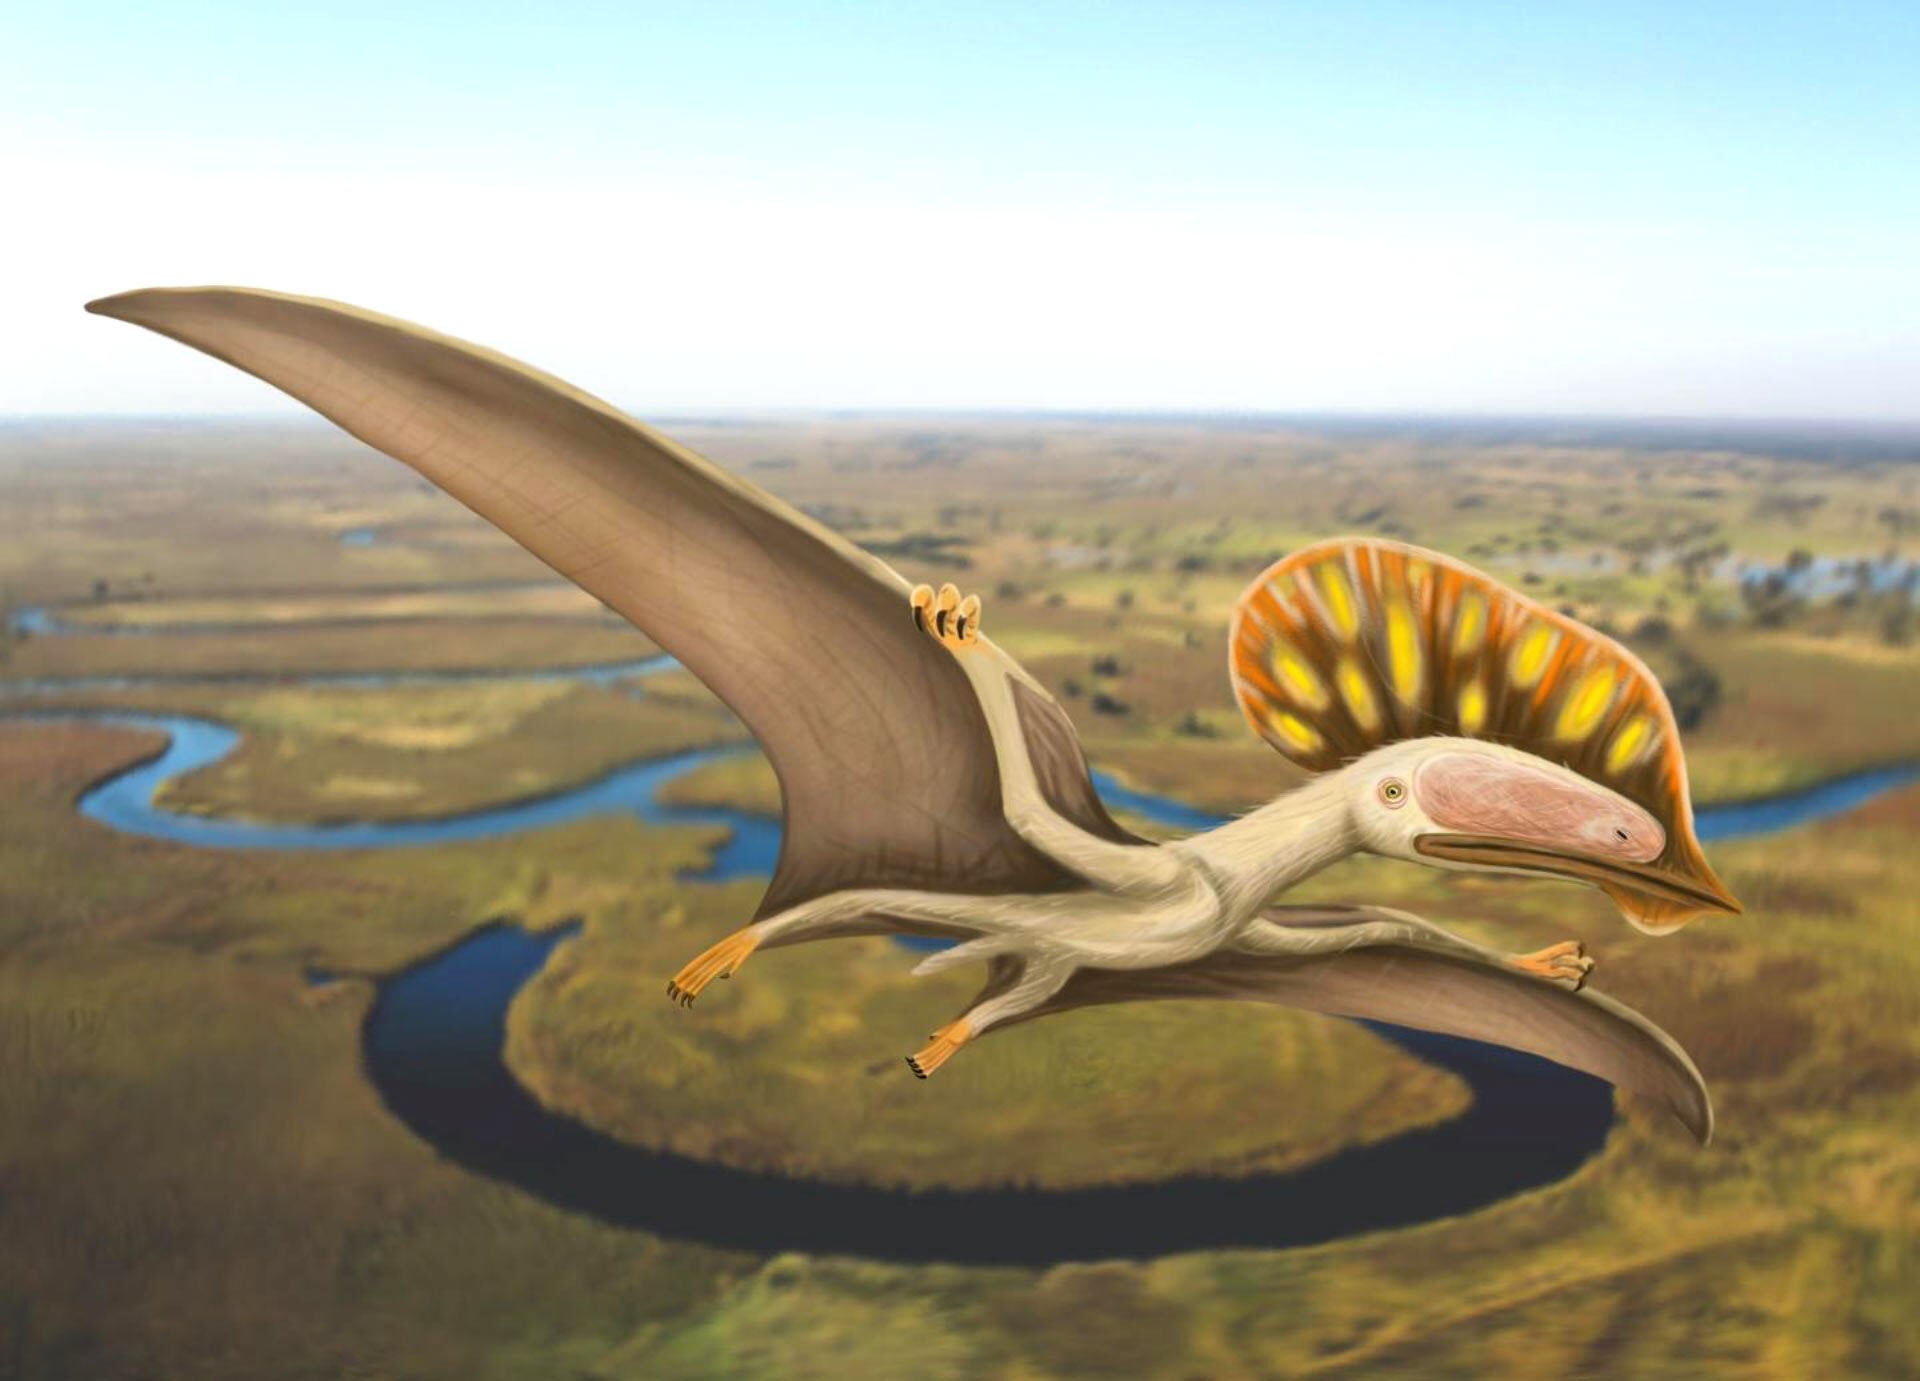 A pteroszauruszok egy bizarr külsejű faját fedezték fel Nagy-Britanniában, ahol most először bukkantak rá a repülő őshüllők rendjének egy ilyen képviselőjére.